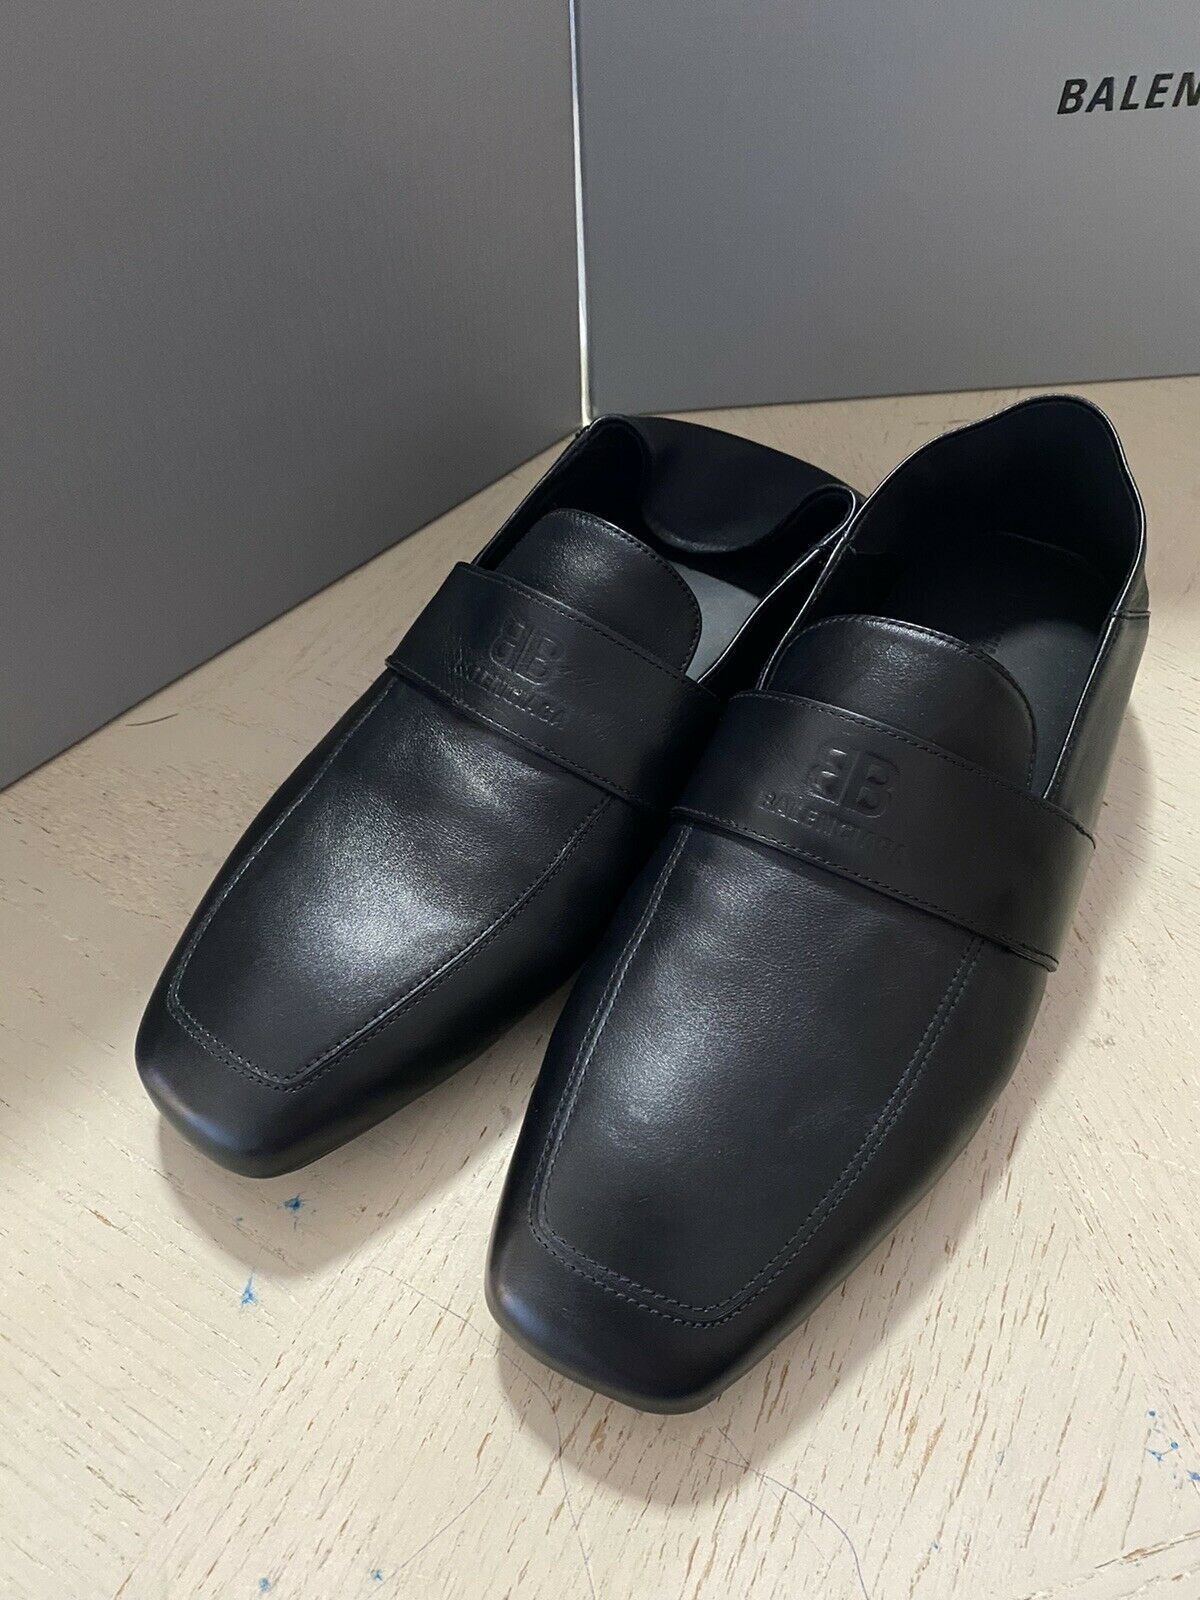 Neu $750 Balenciaga Iconic Mokassin Leder Loafers Schuhe Sandale Schwarz 7 US/40 E